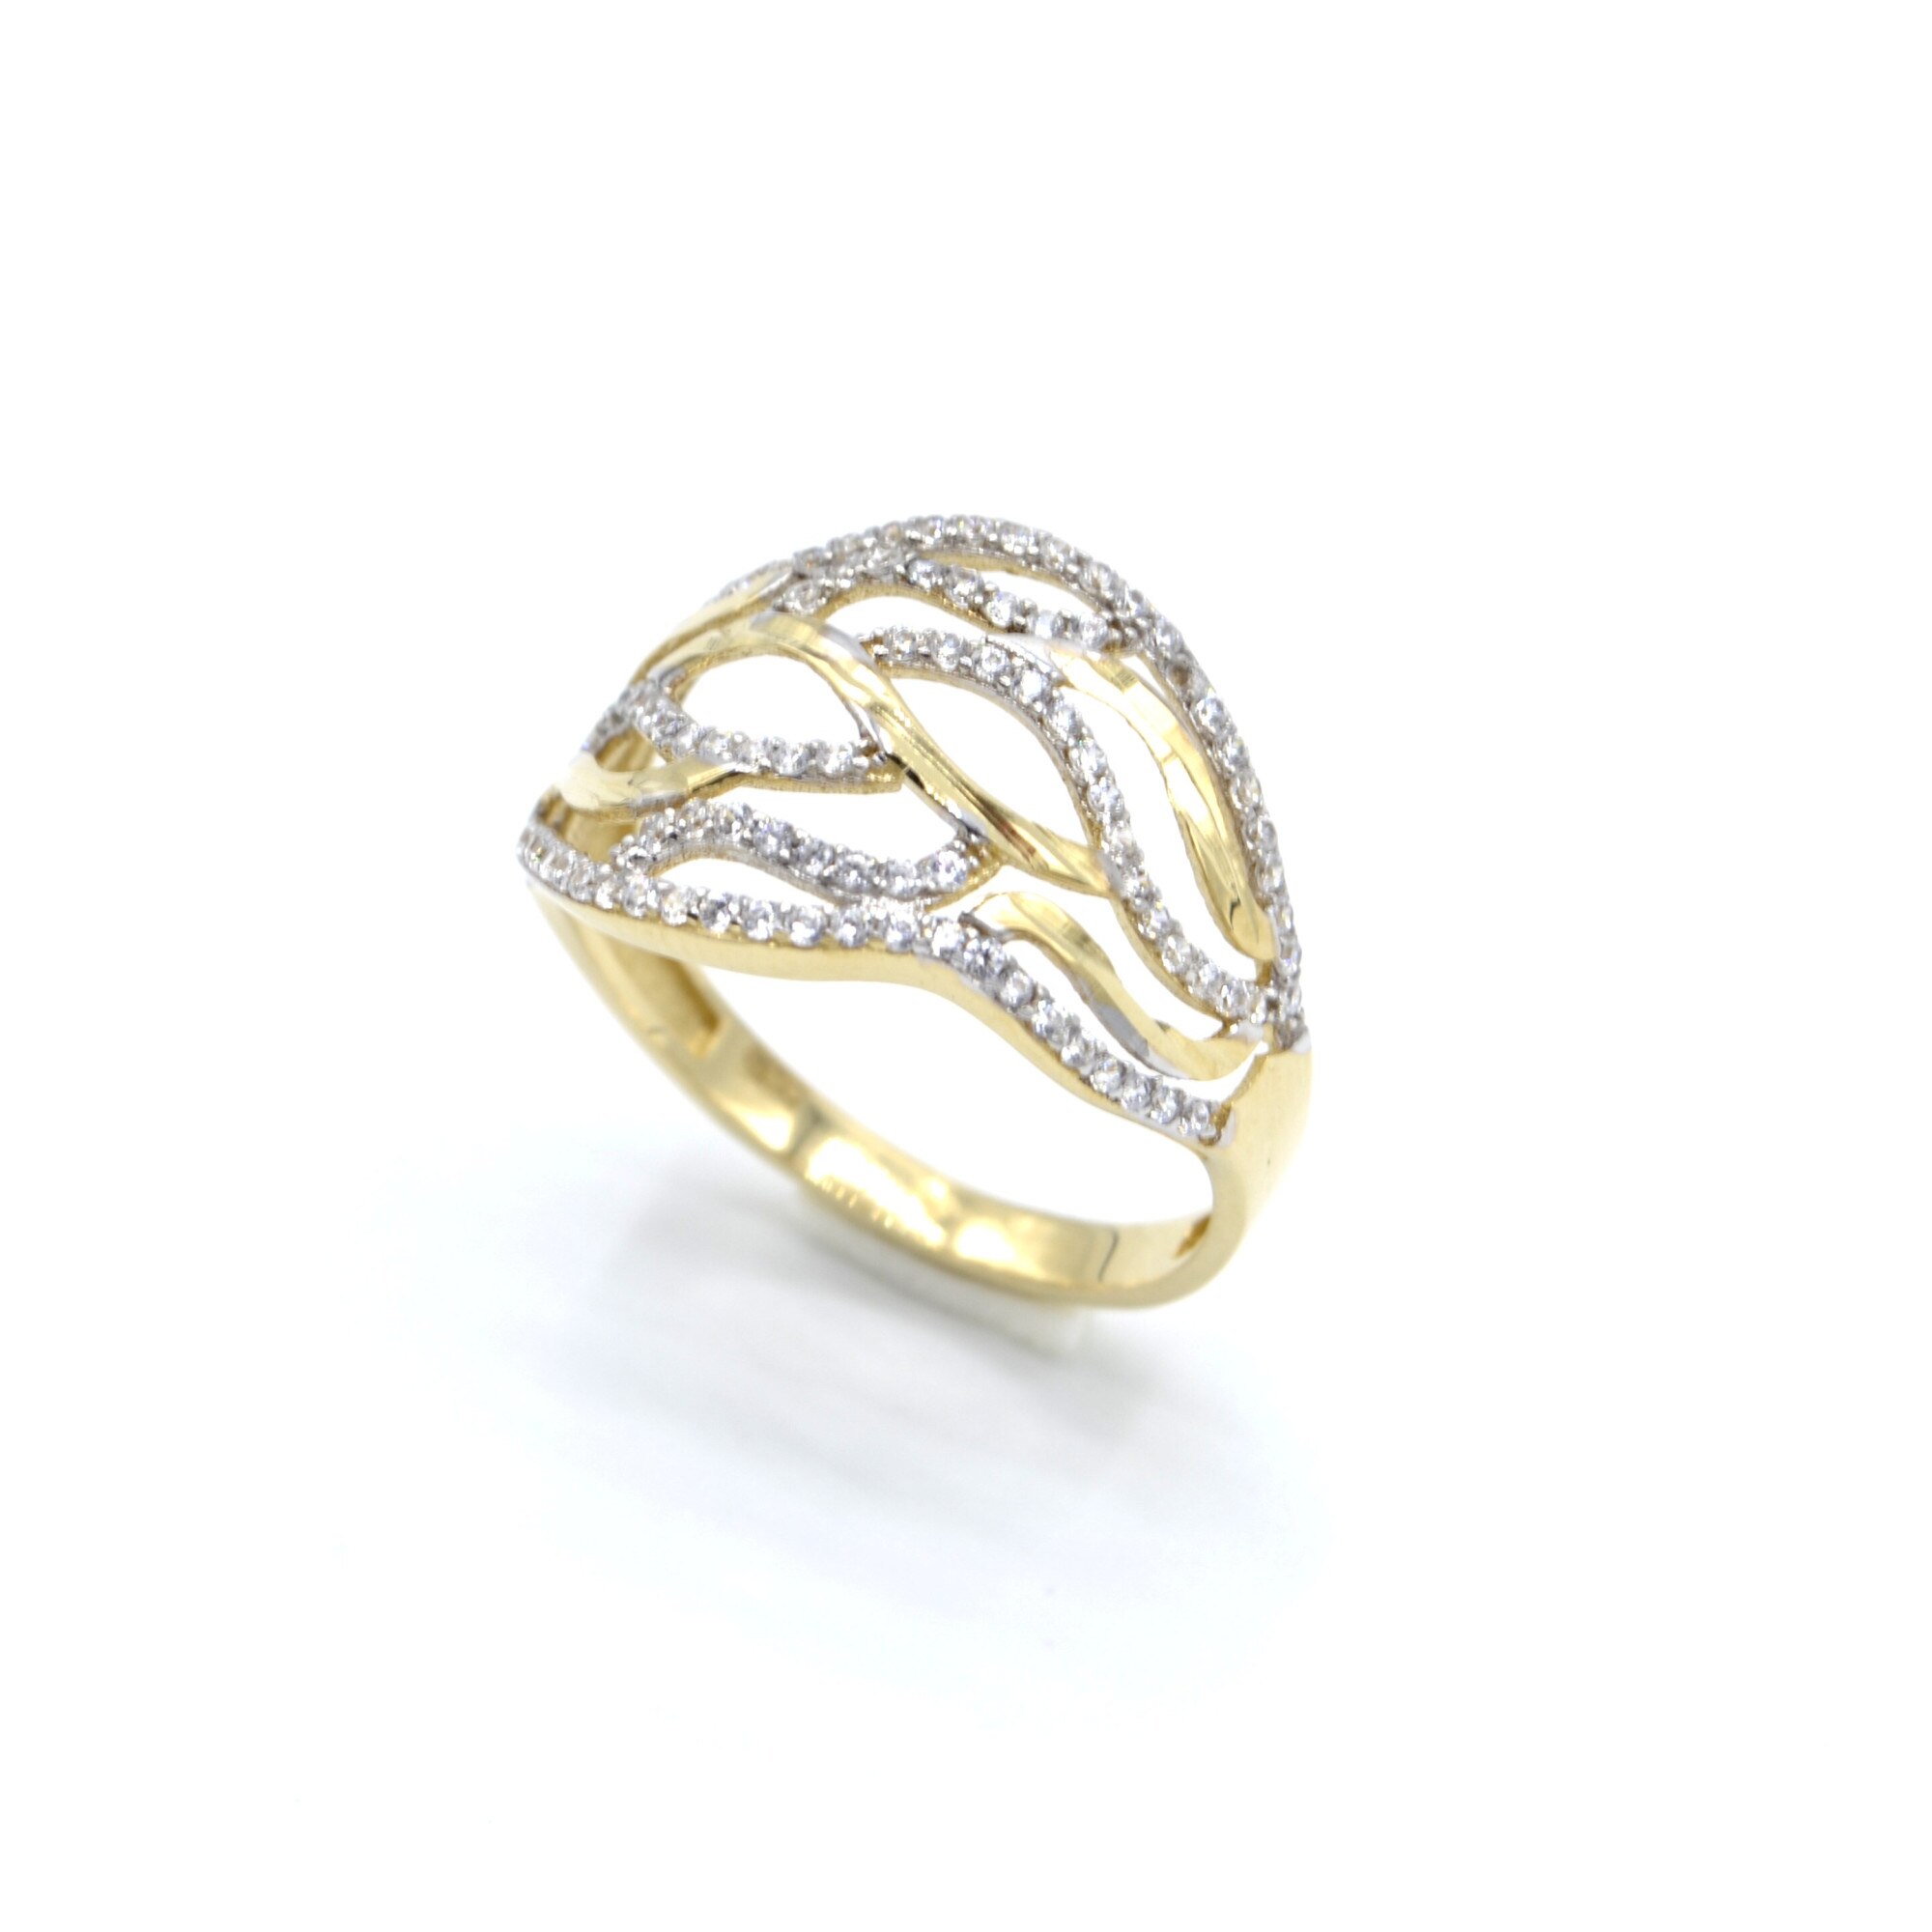 Arany gyűrű - válaszd ki, hogy milyen arany gyűrűt keresel: